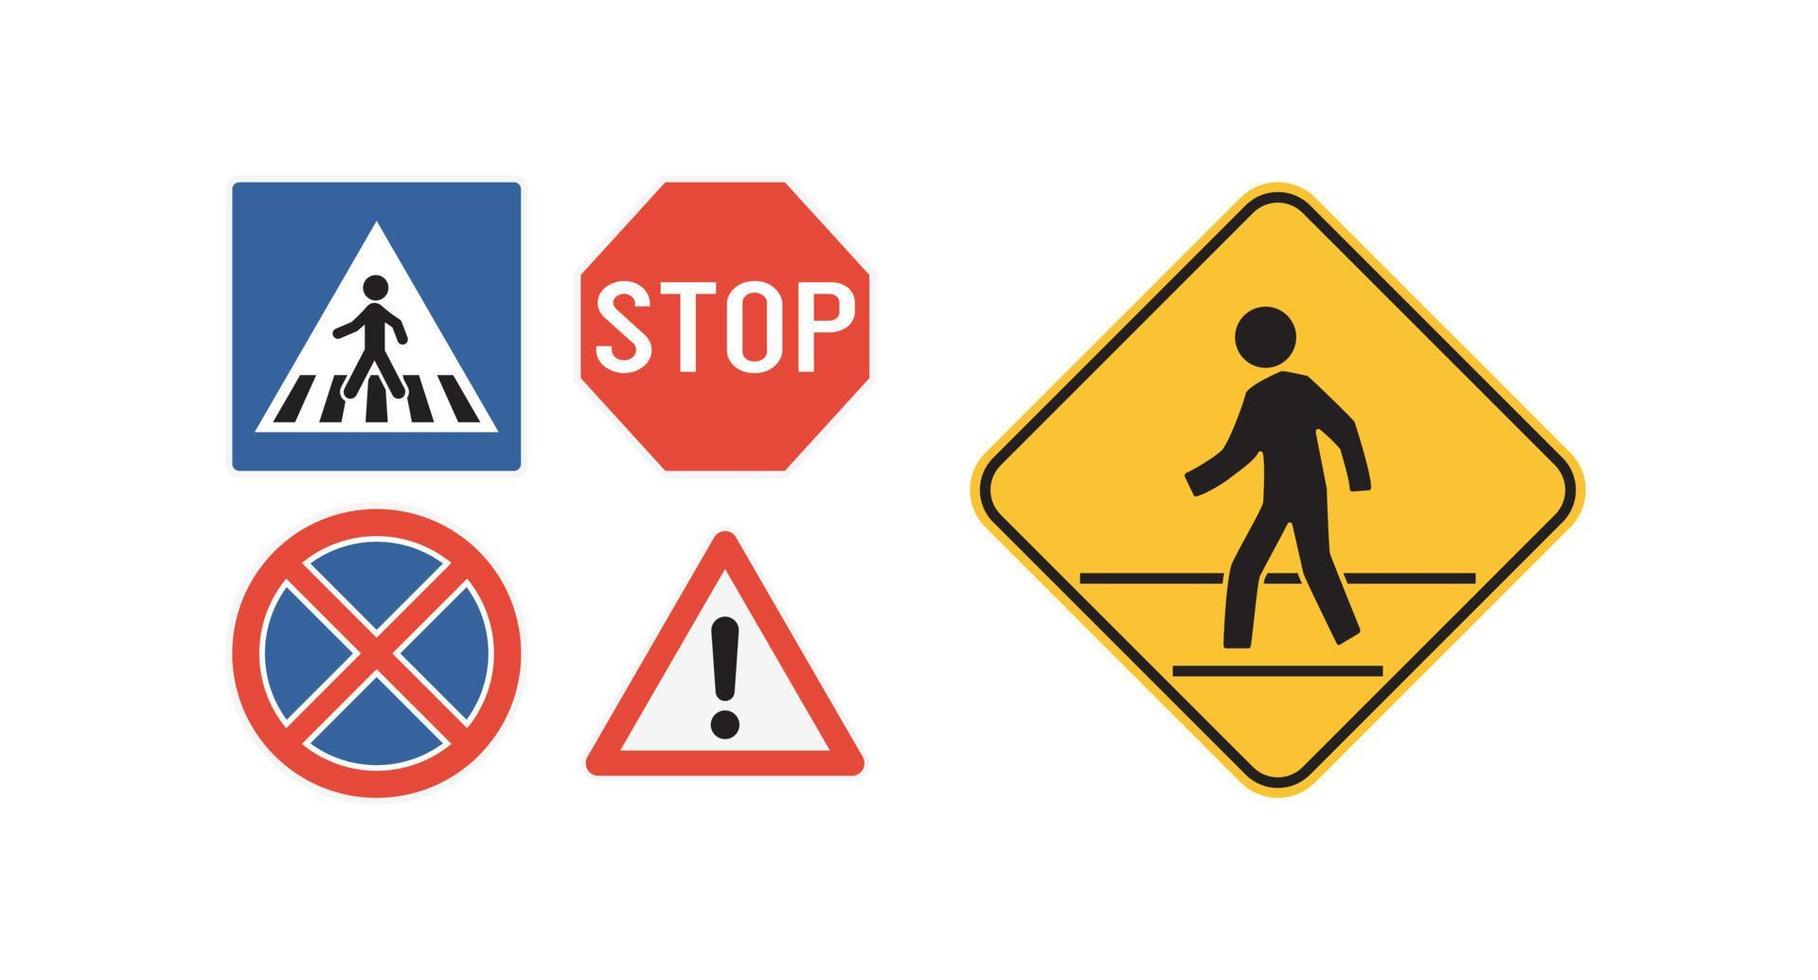 staatswet stop voor voetgangers in zebrapad teken en verkeersborden met stadsweg platte vectorillustratie. vector